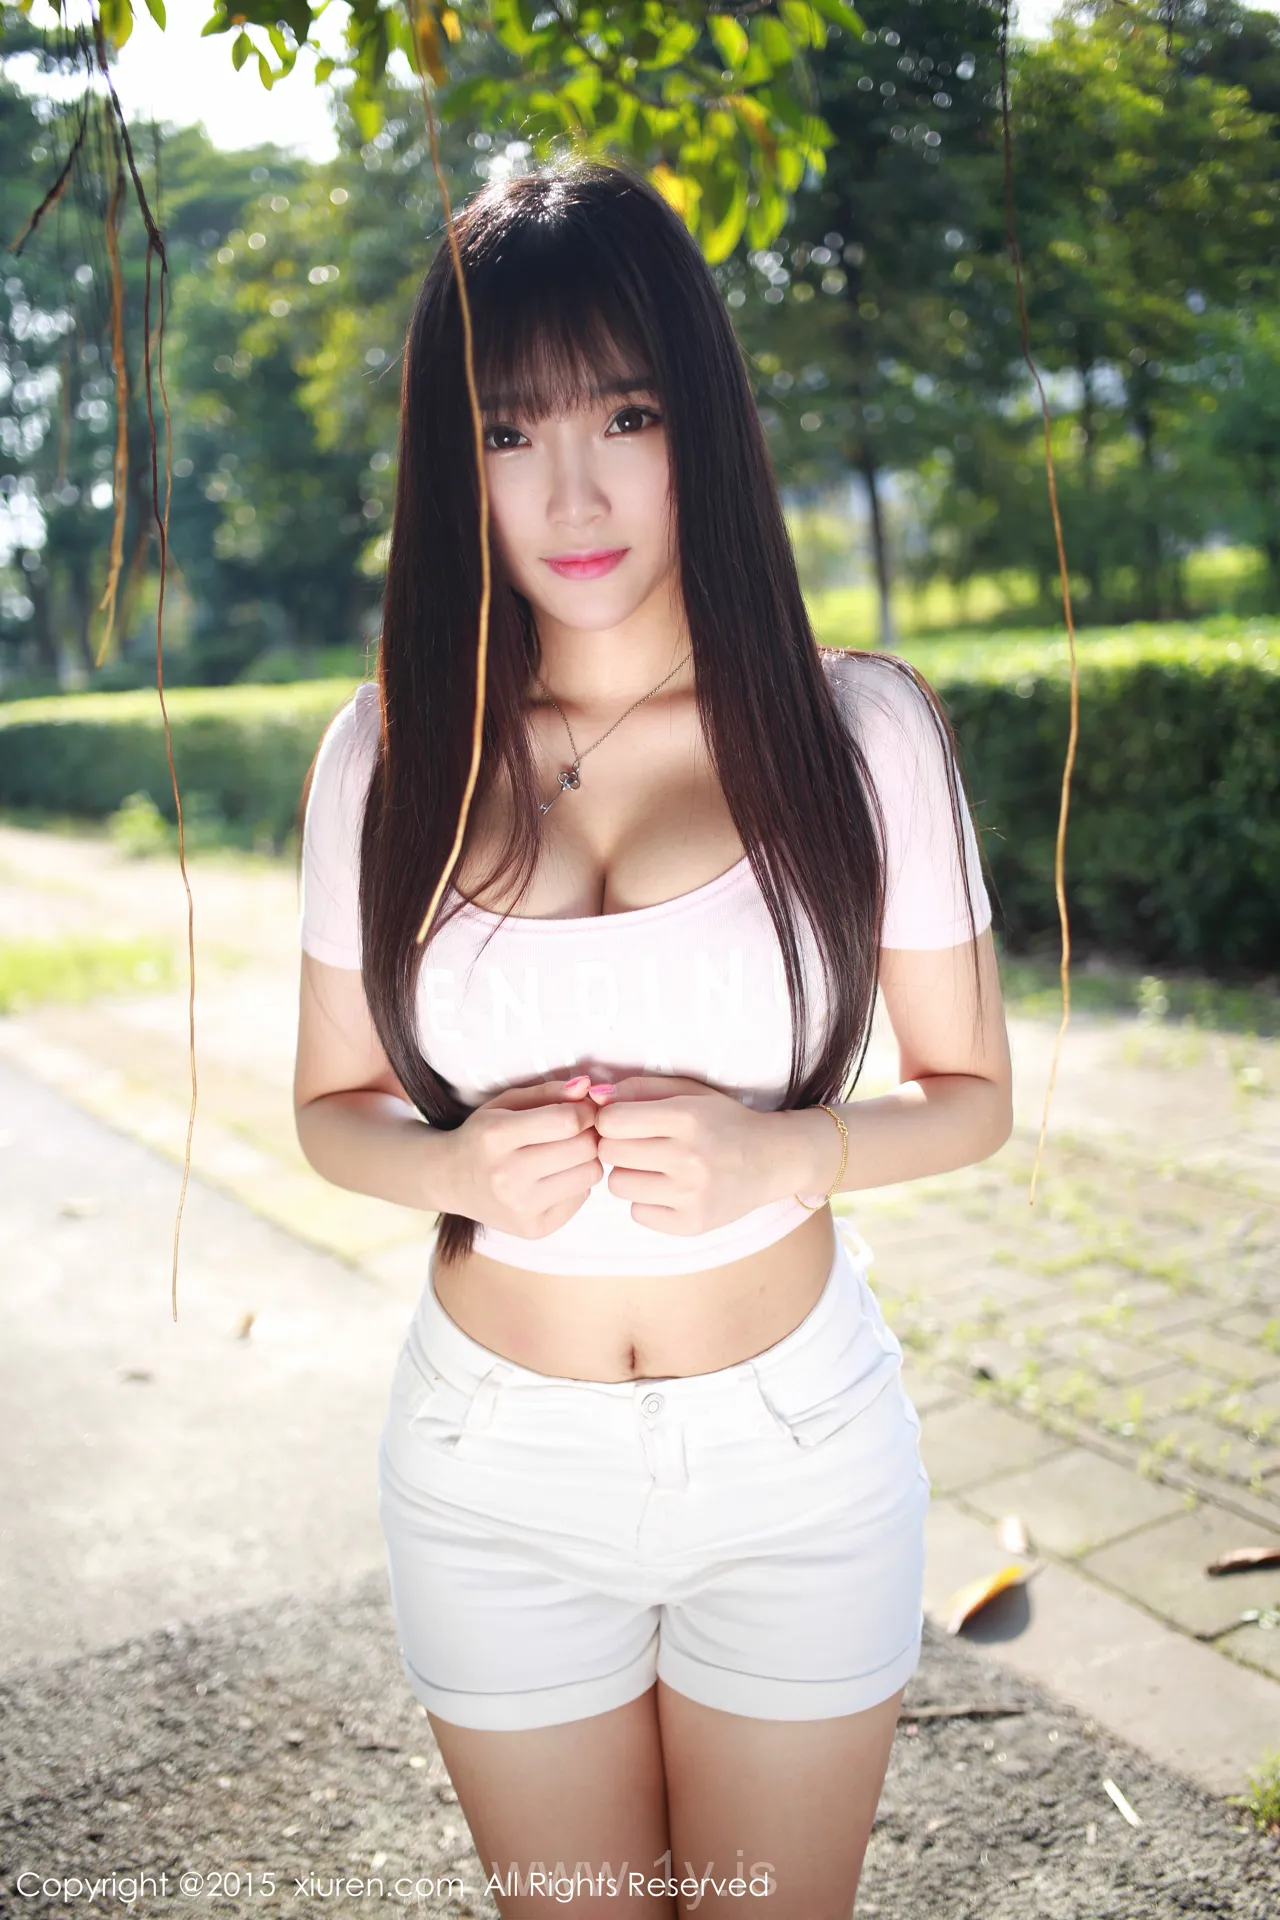 XIUREN(秀人网) NO.345 Slim & Good-looking Asian Teen 夏瑶baby